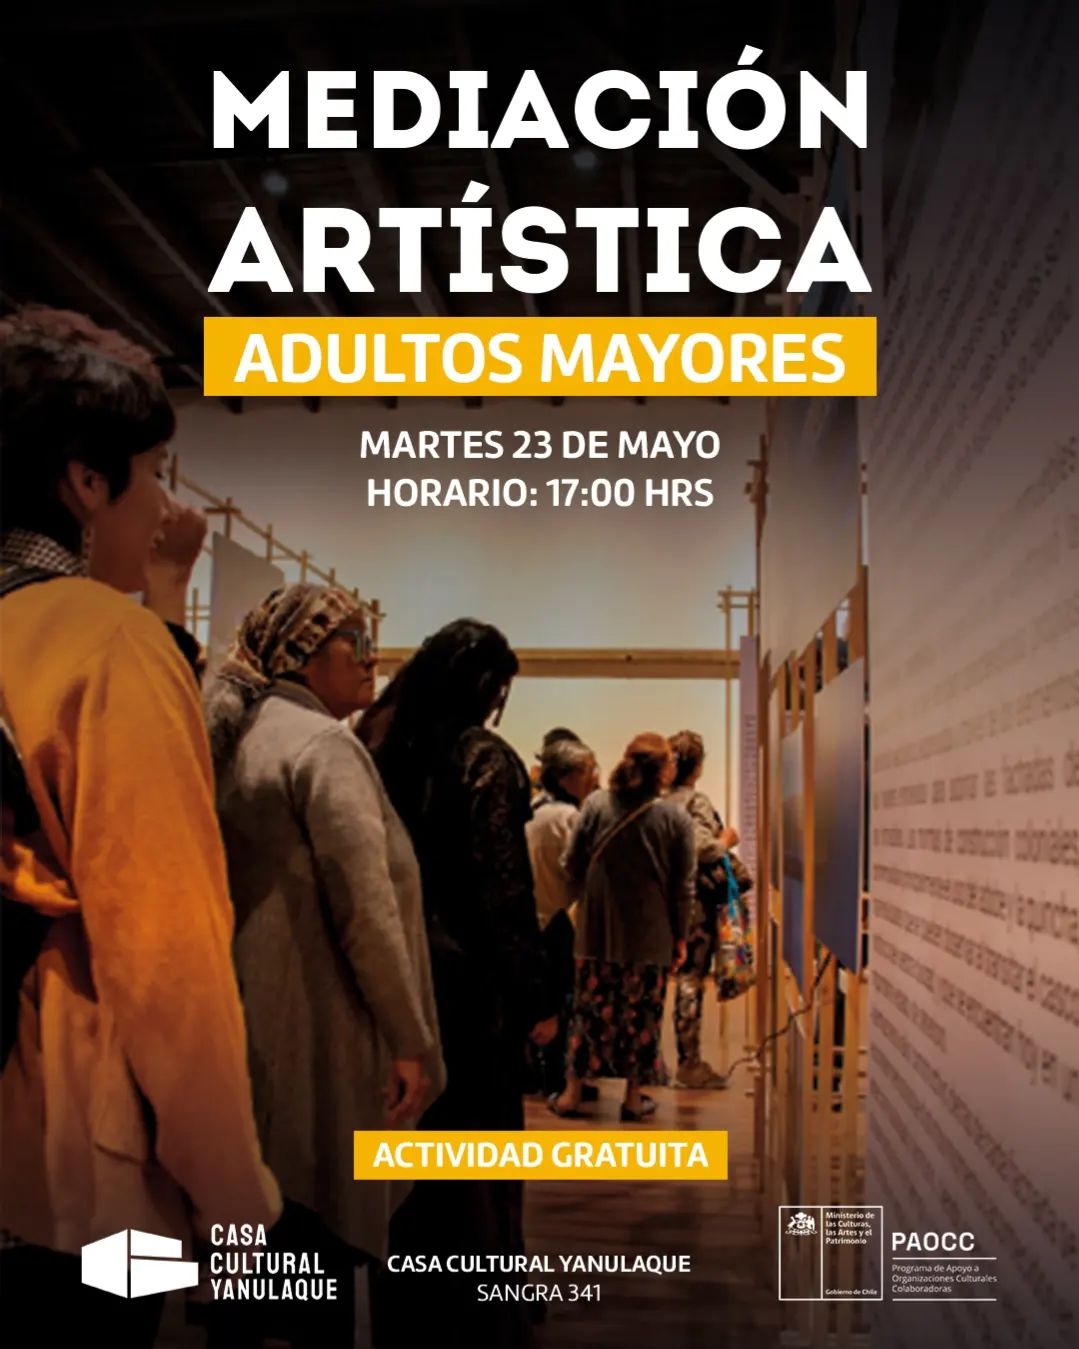 Mediacion Artistica Adultos Mayores